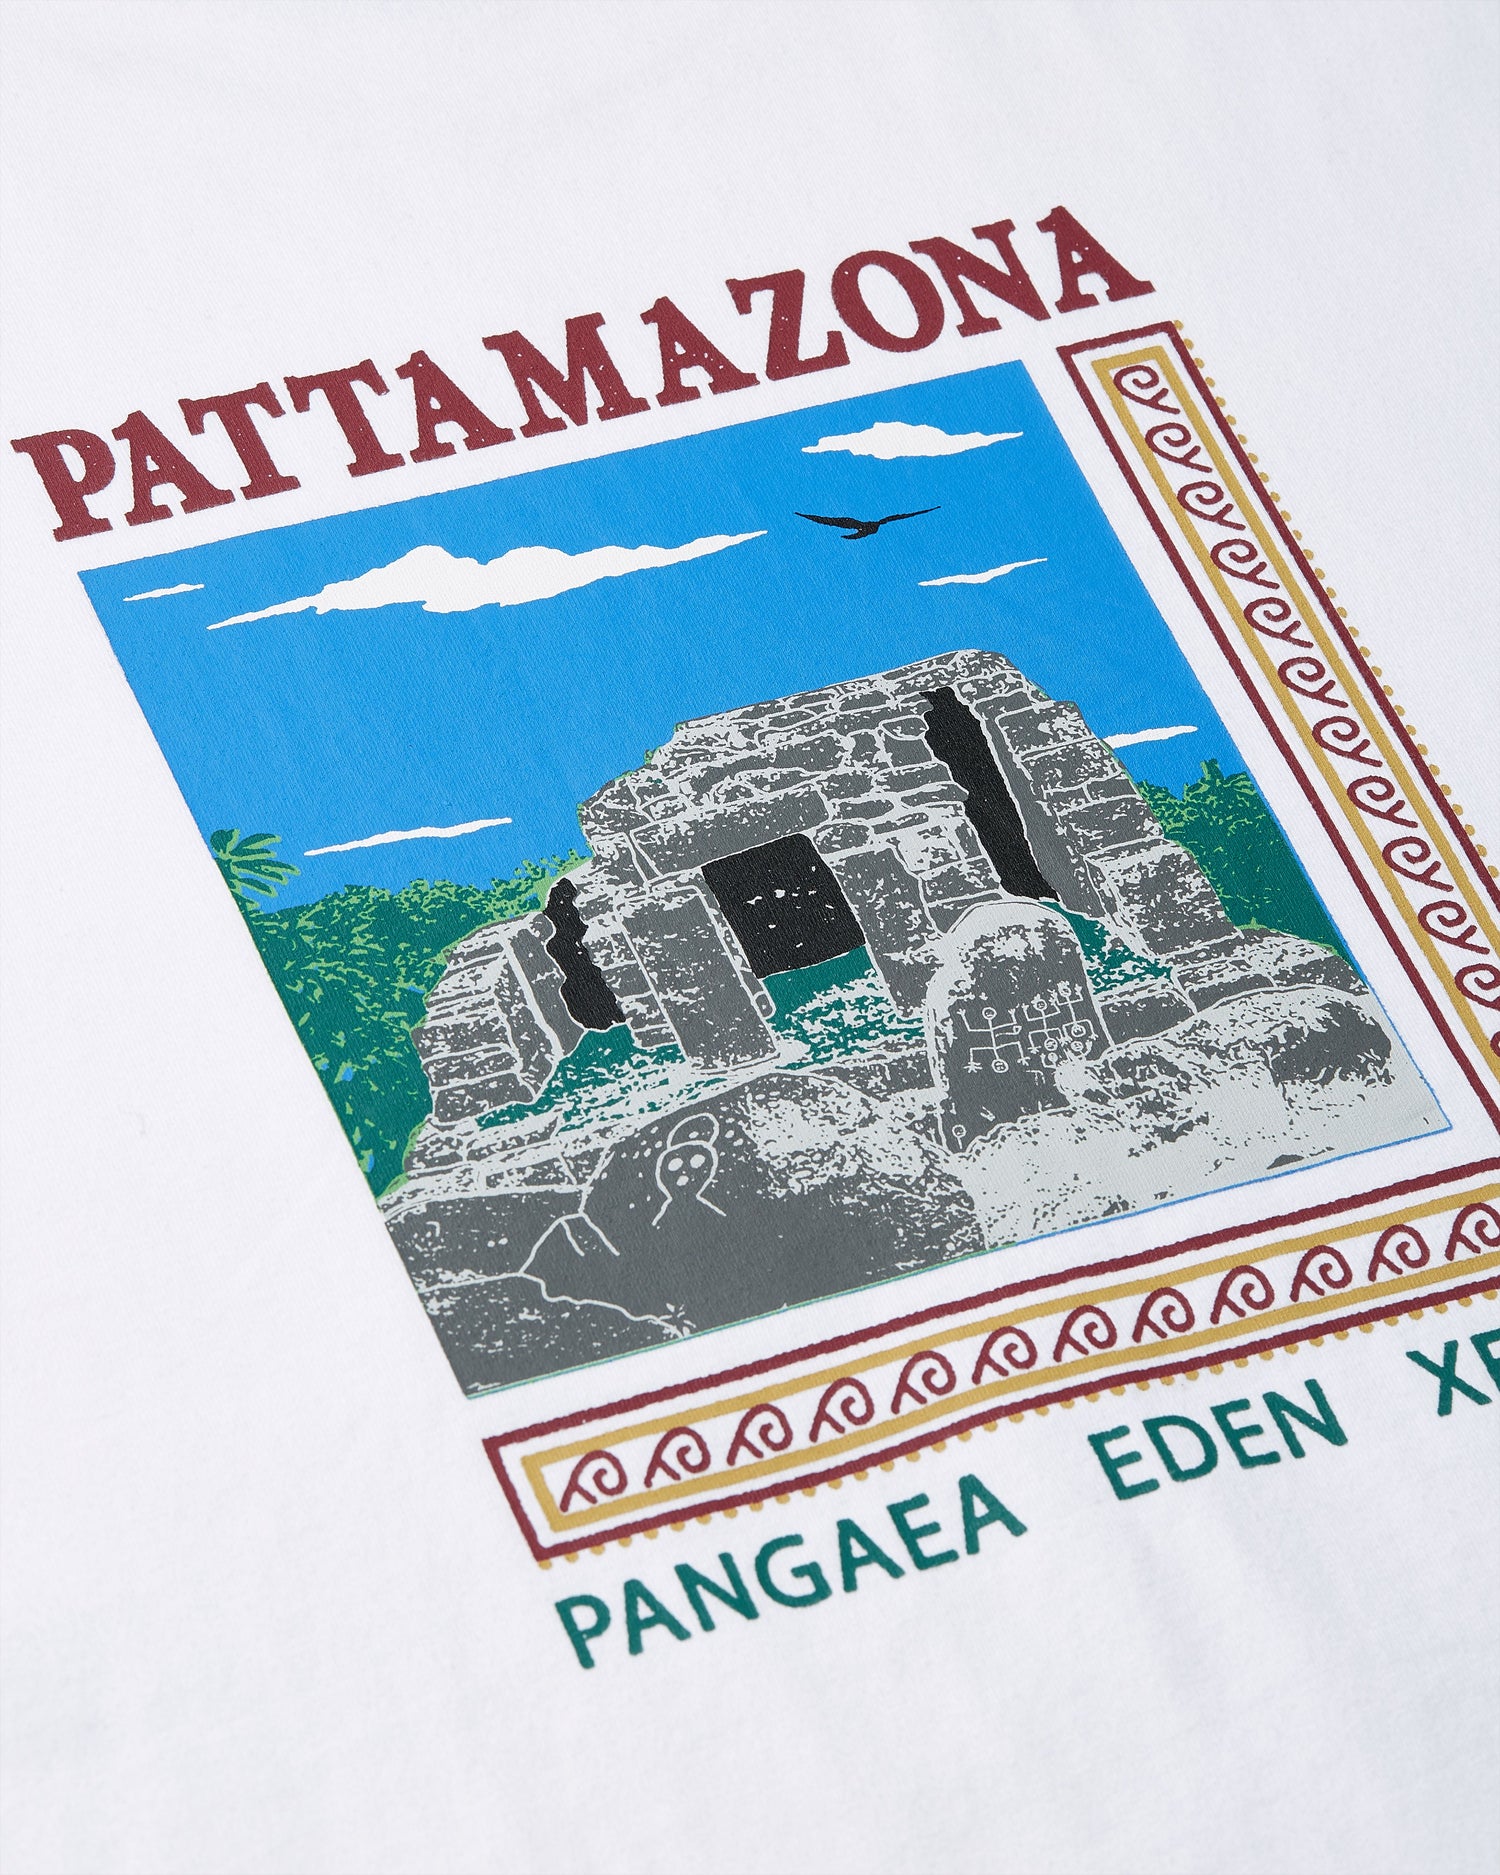 Patta Pattamazona T-Shirt (Optic White)